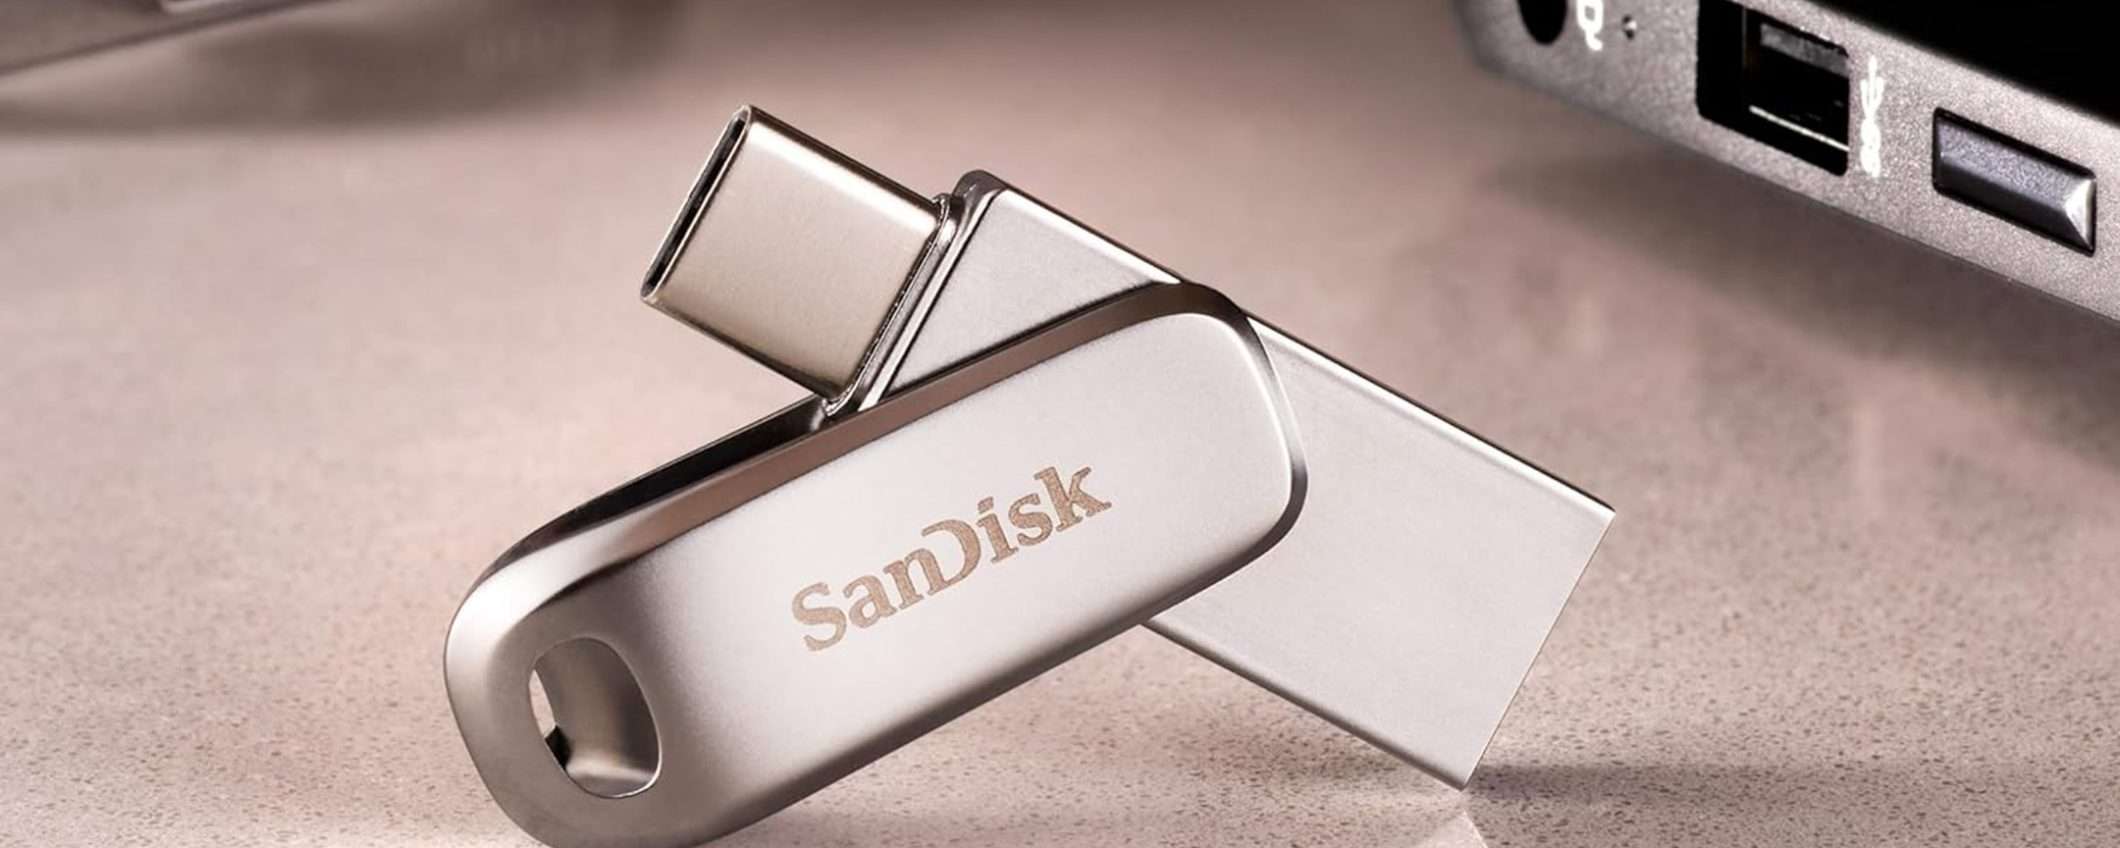 USB 2-in-1 Ultra Dual Drive Luxe di SanDisk da 64GB scontata del 40%